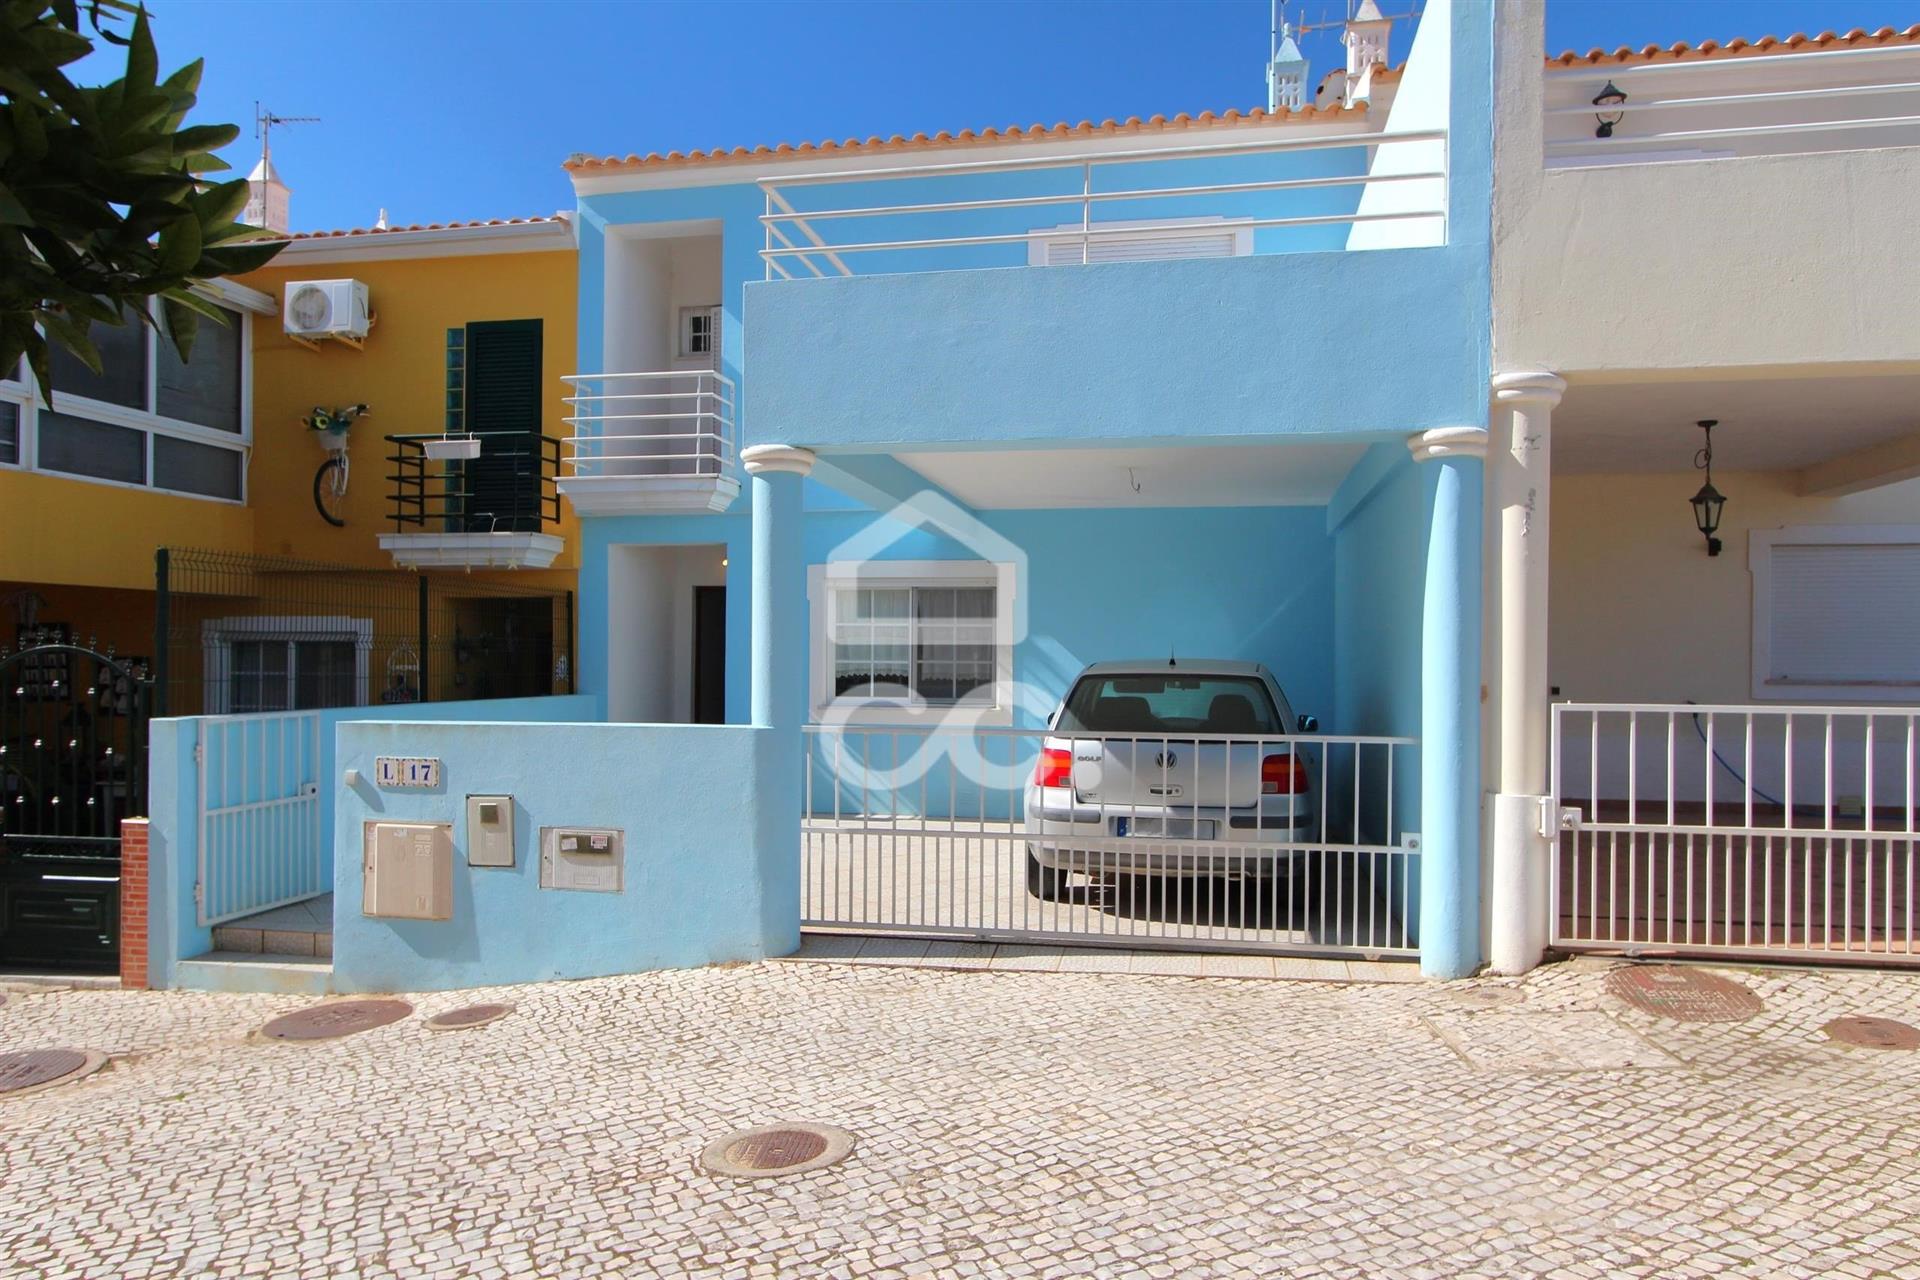 3 bedroom villa in the charming village of Pêra